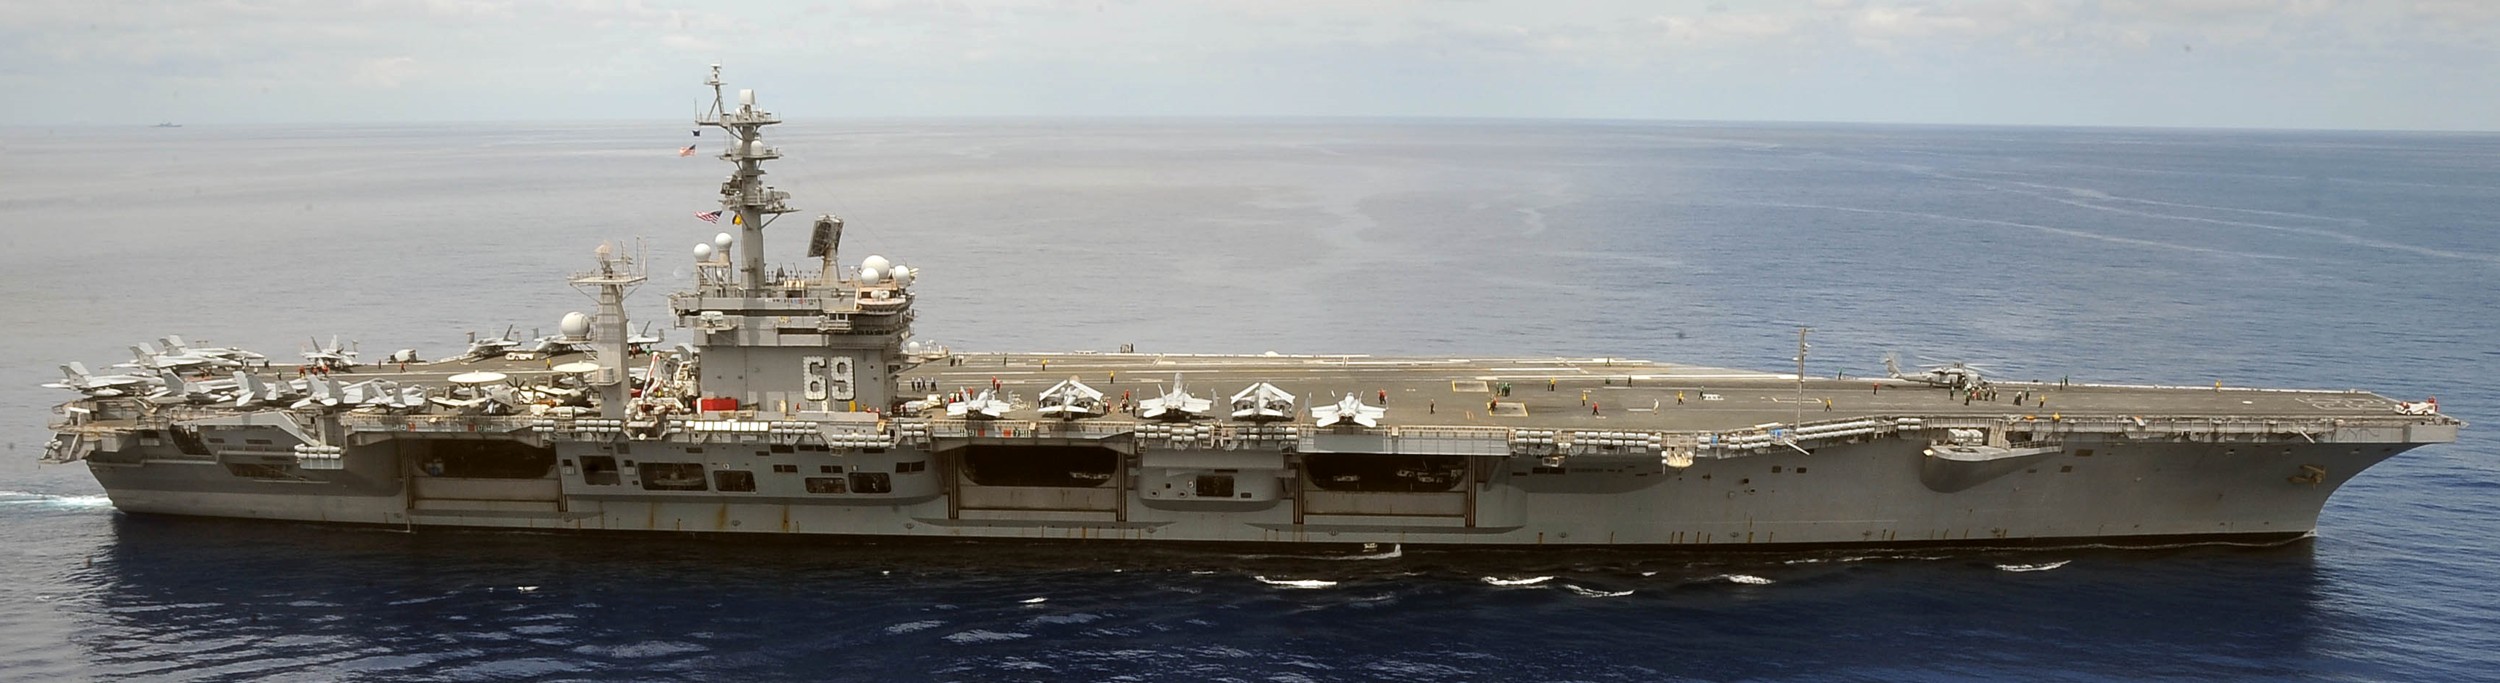 uss dwight d. eisenhower cvn-69 aircraft carrier 2012 135